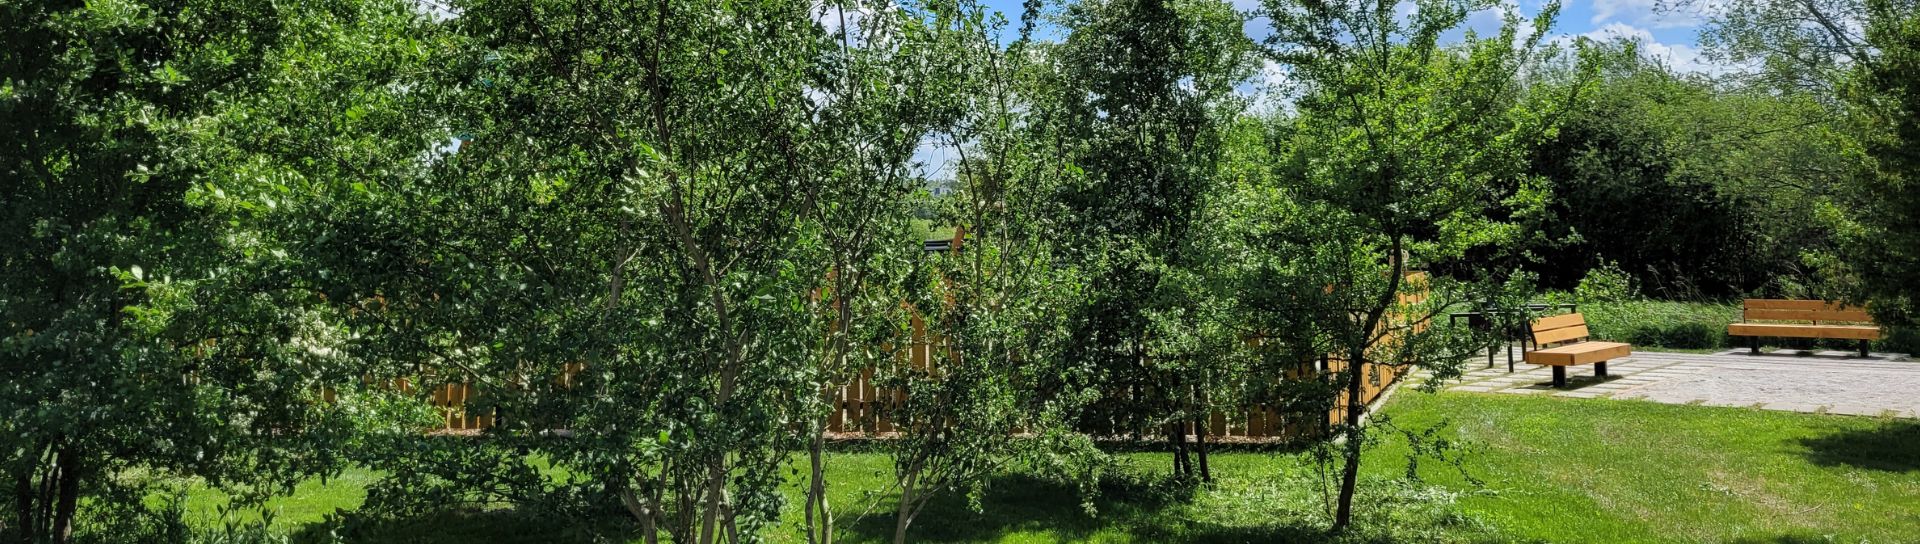 Park Pychowicki widok na drzewa i ławki